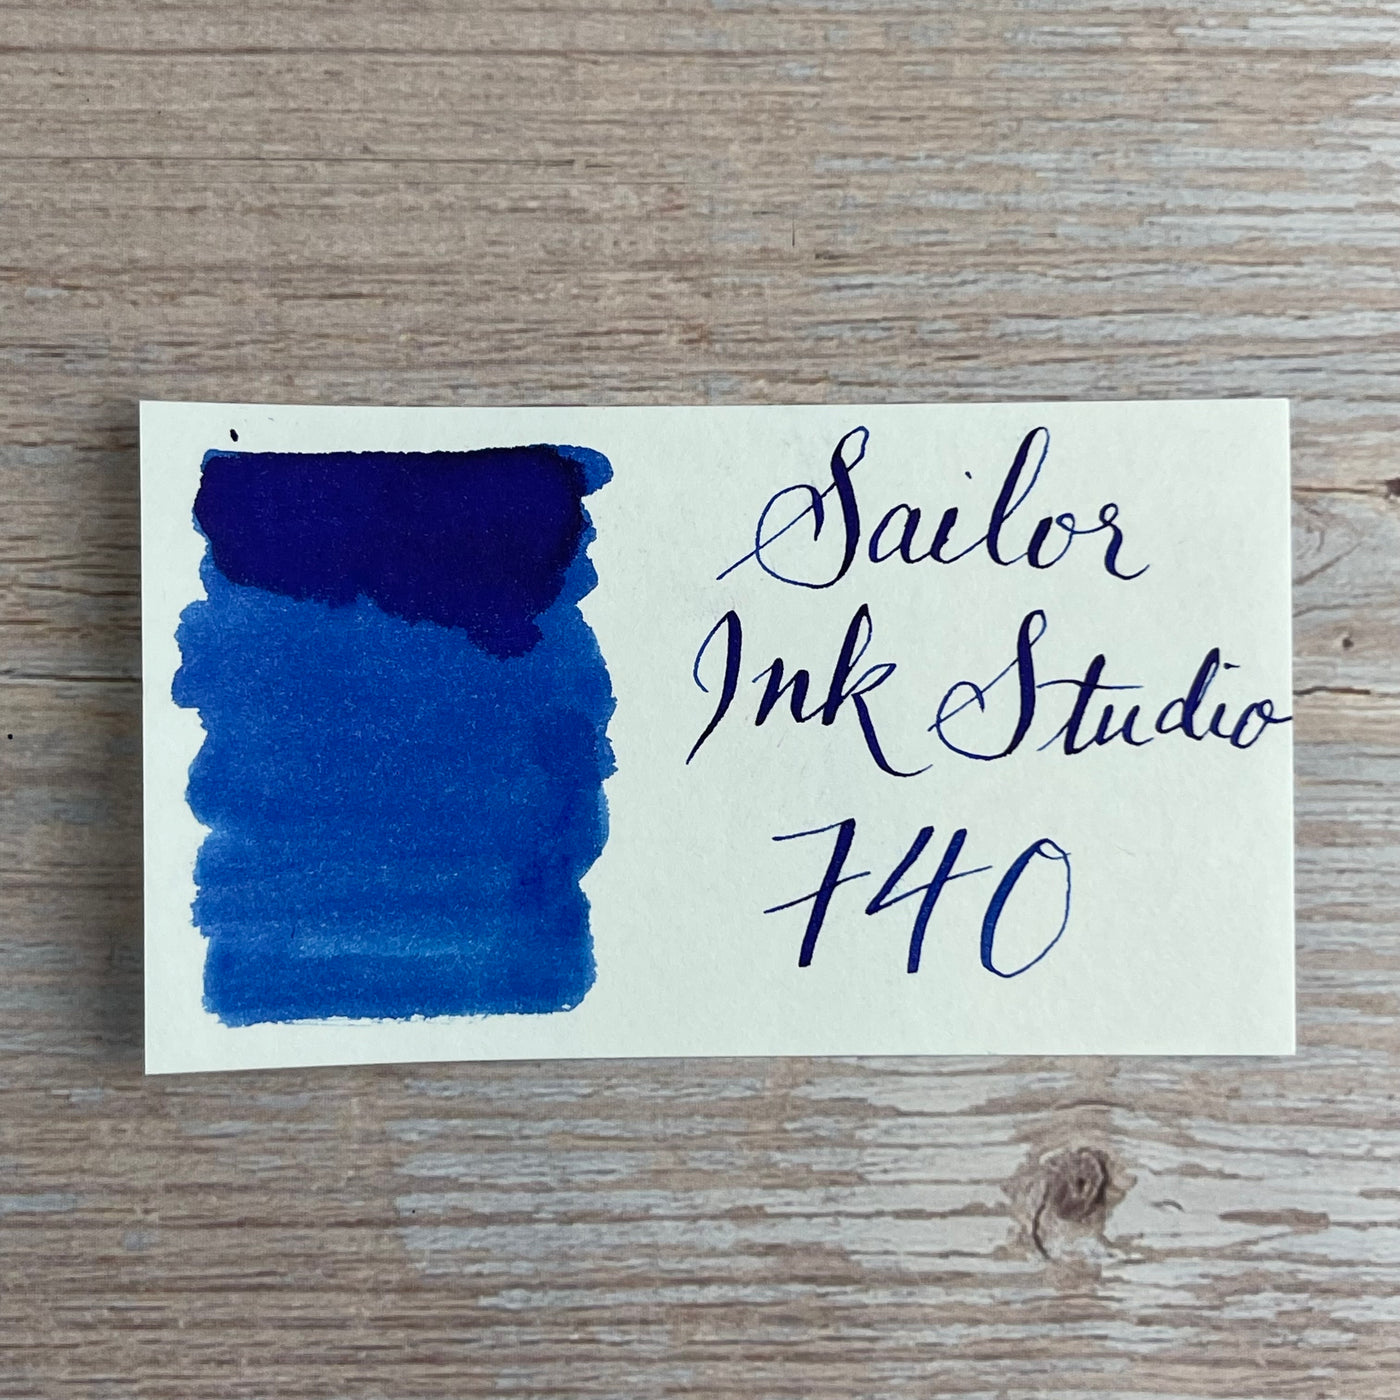 Sailor Ink Studio 20ml Bottled Ink - 740